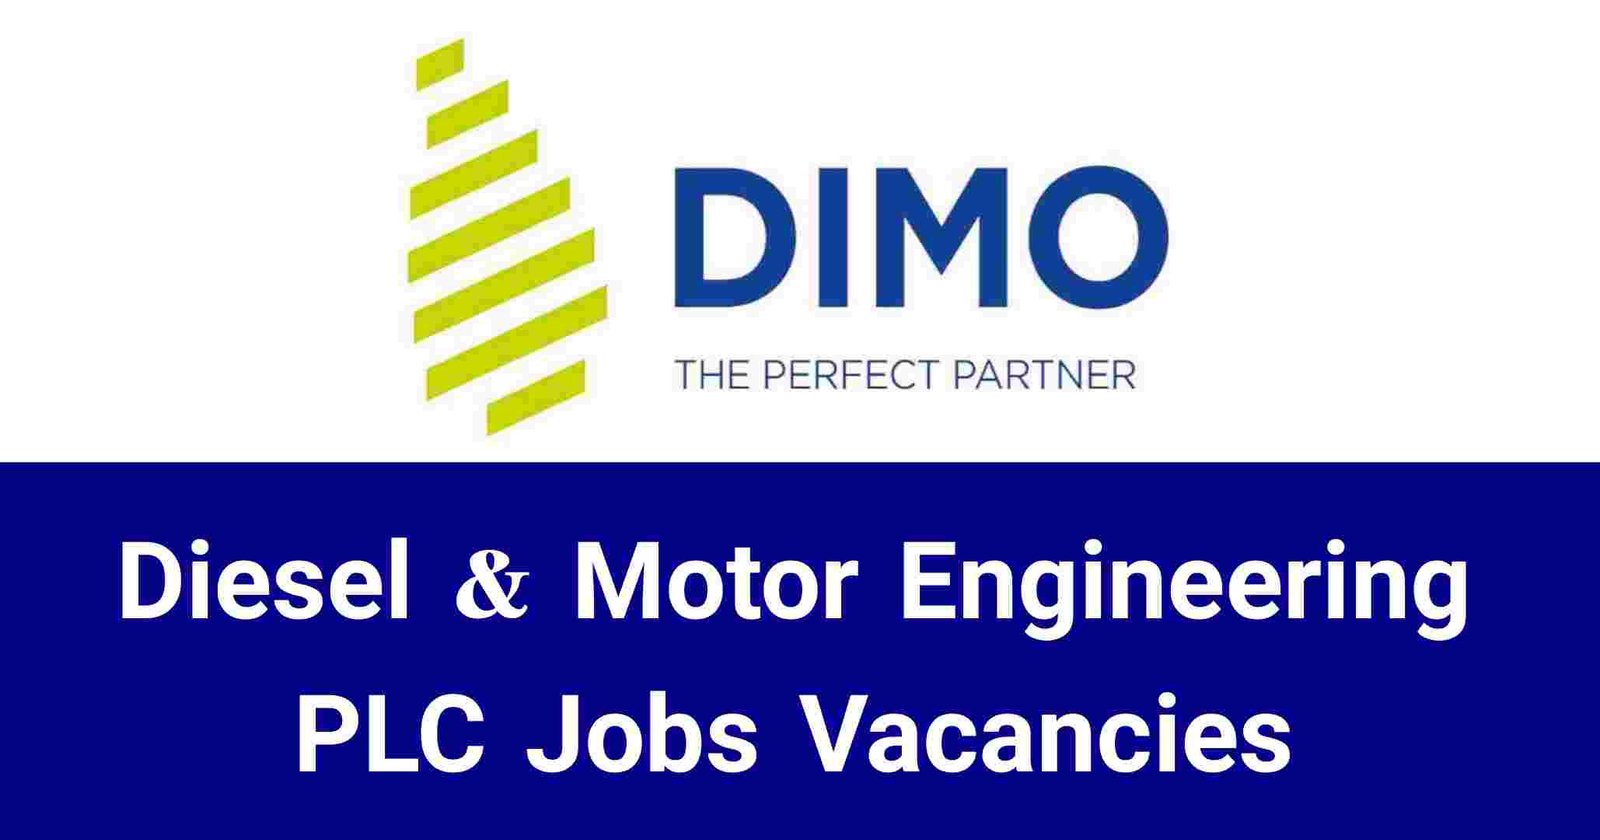 Diesel & Motor Engineering PLC Jobs Vacancies